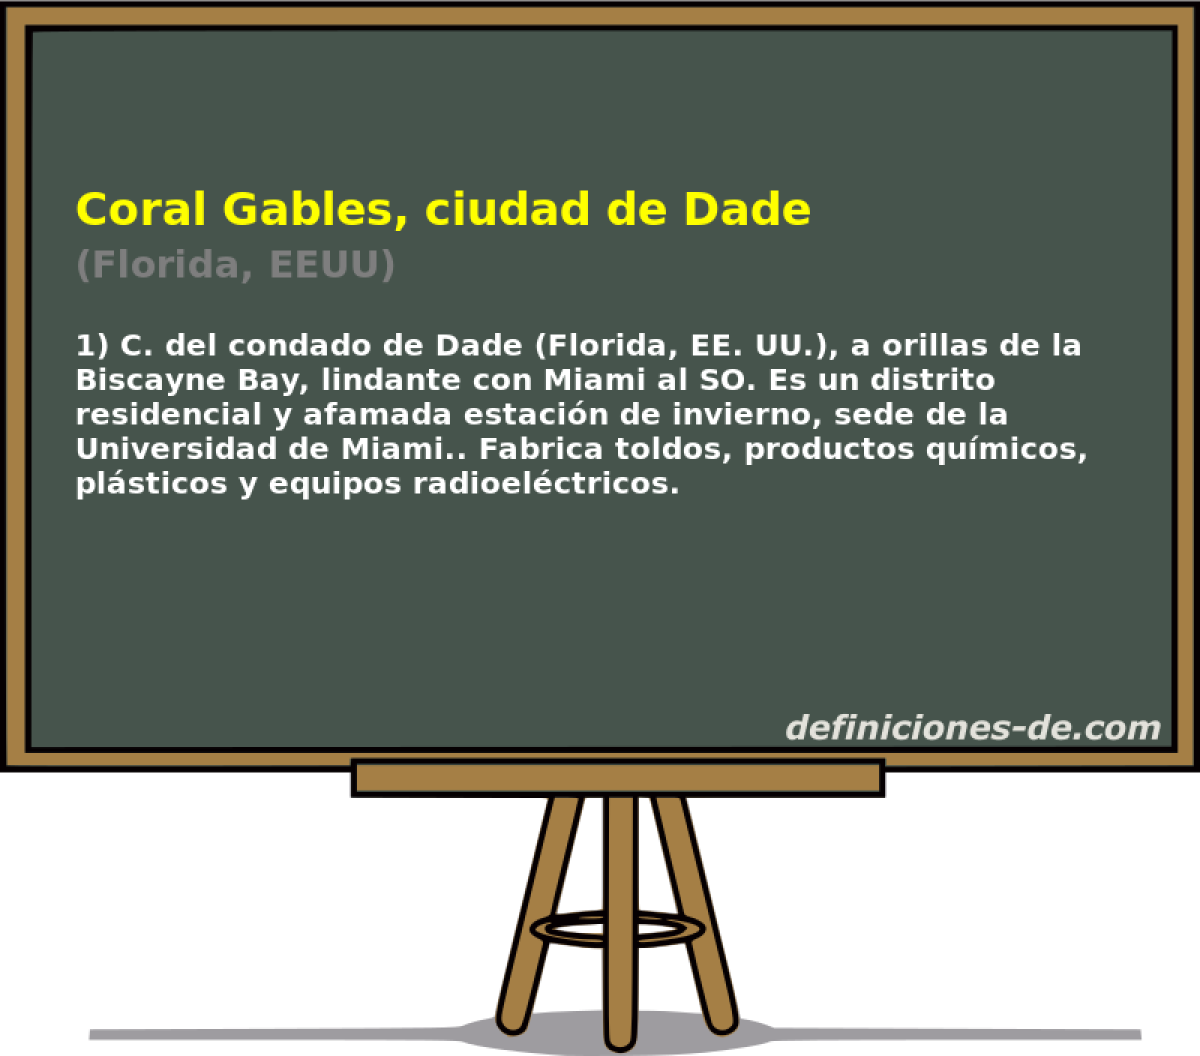 Coral Gables, ciudad de Dade (Florida, EEUU)